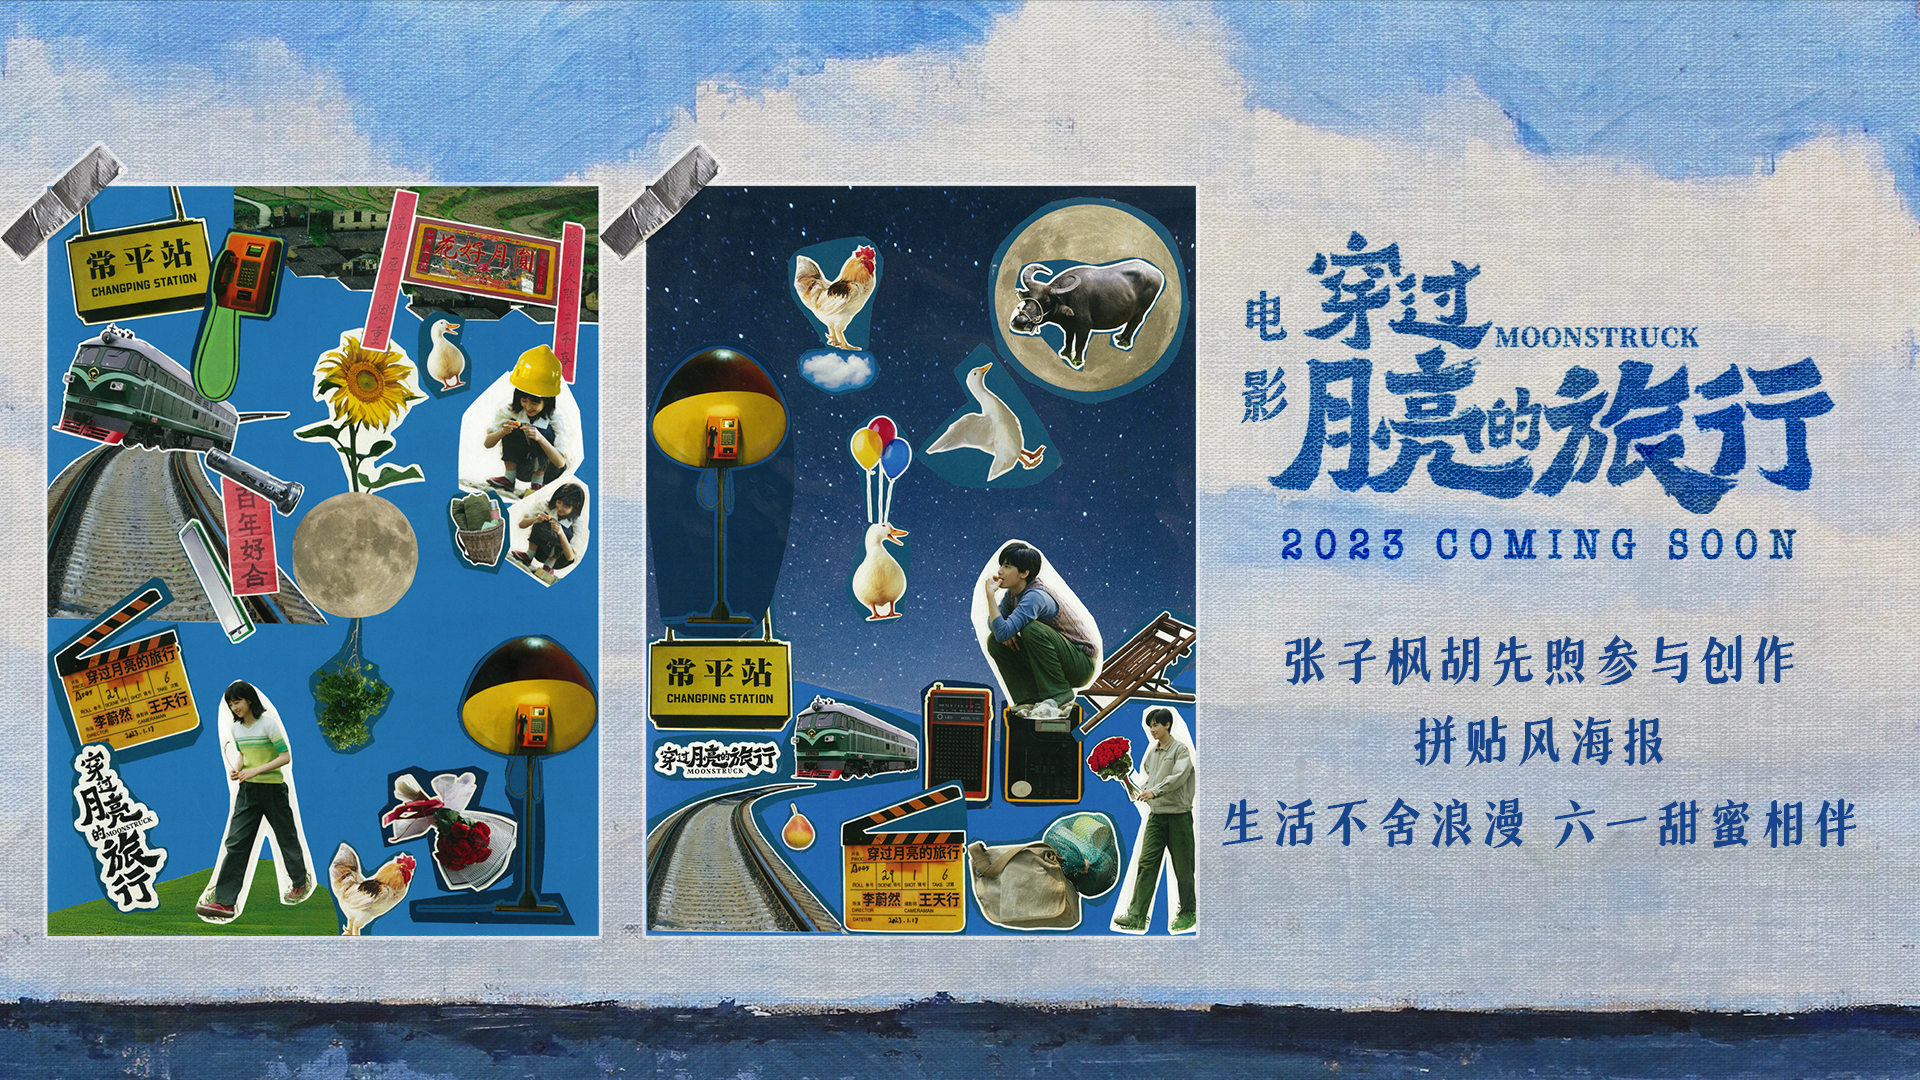 张子枫胡先煦参与创作《穿过月亮的旅行》拼贴风海报 甜蜜直冲宇宙